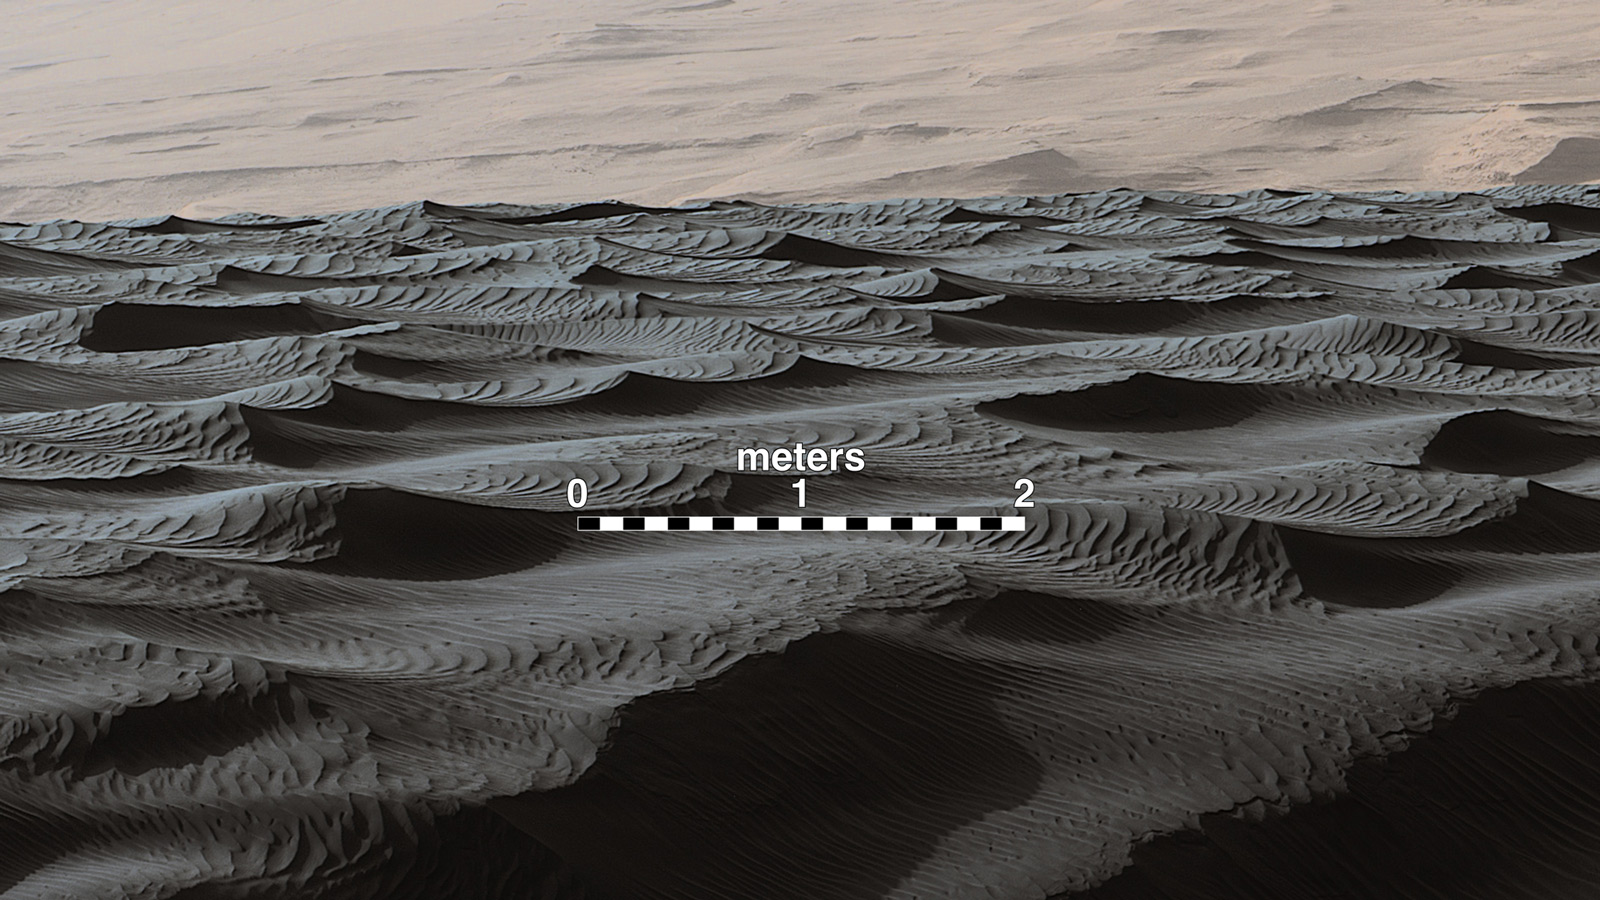 Ondas de distintos tamaños (decímetros, metros) en la superficie de Marte, en diciembre de 2015. Fuente: NASA/JPL-Caltech/MSSS.